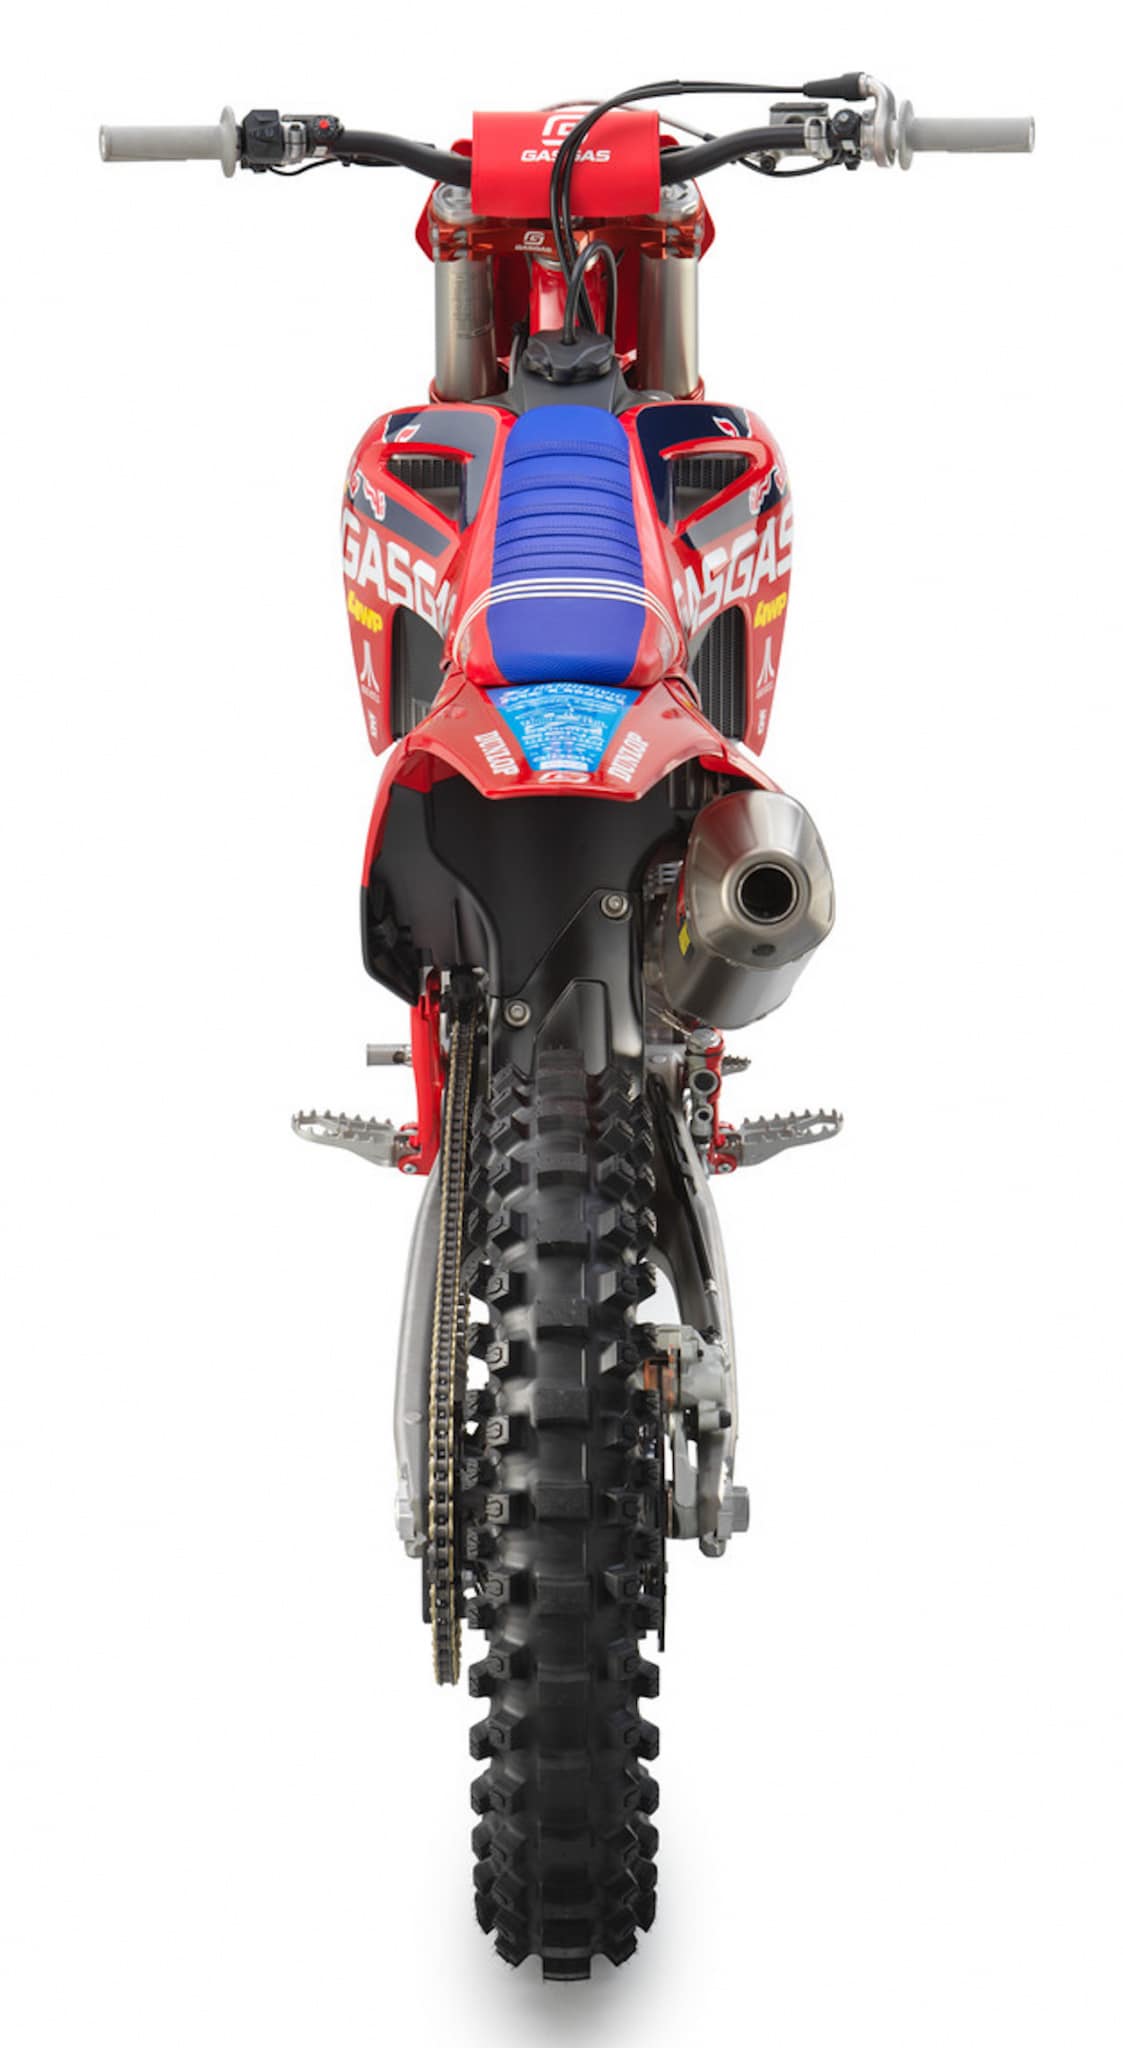 GASGAS MC 450F Troy Lee, Motocross Bike-6 디자인